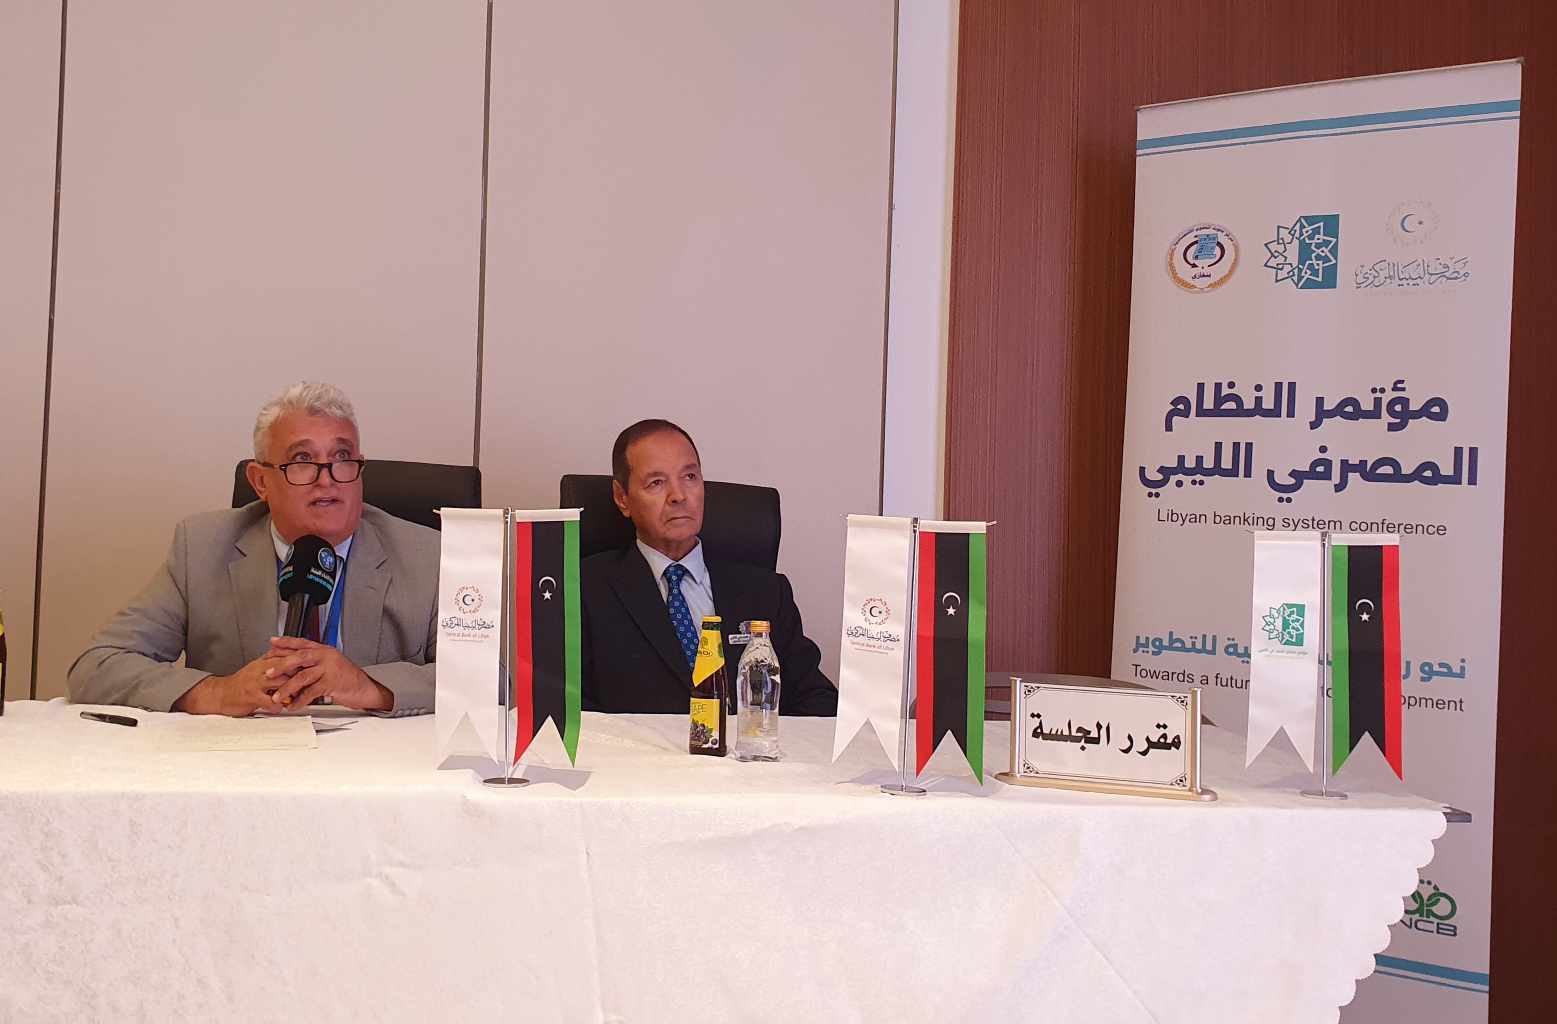 دراسات ميدانية لأوضاع المصارف التجارية ضمن المؤتمر الدولي الثاني للنظام المصرفي في ليبيا